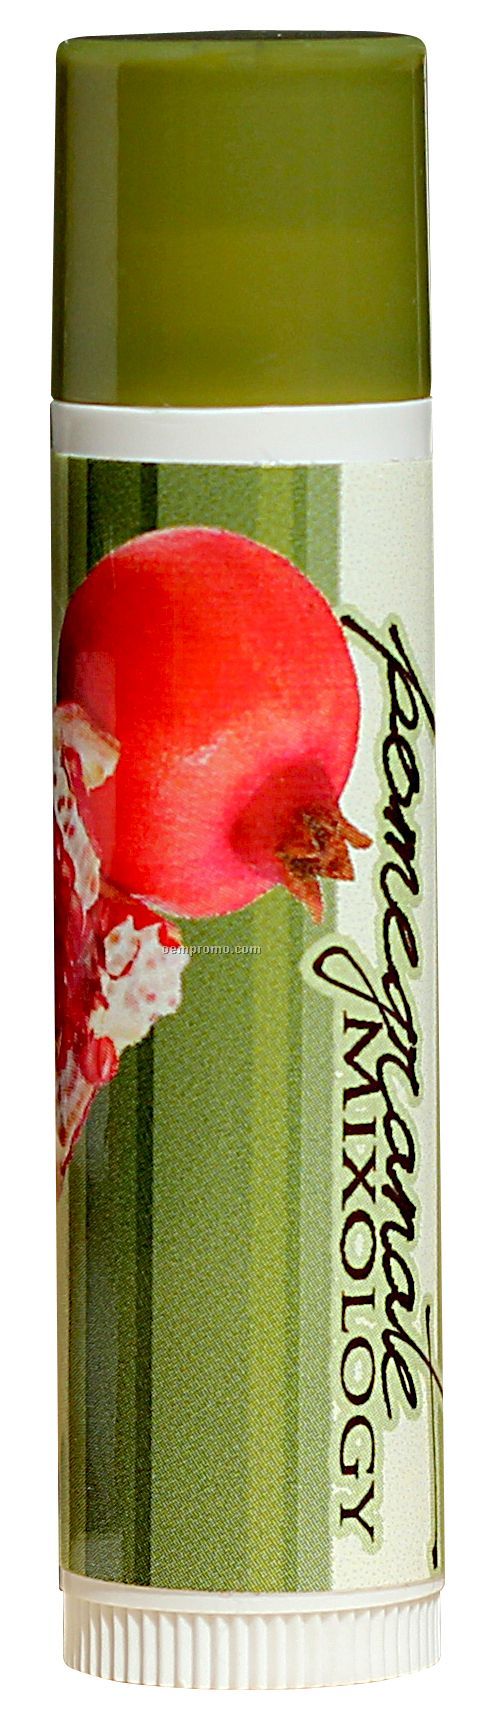 Iced Pear Flavor Spf15 Lip Balm W/Standard Dark Green Cap